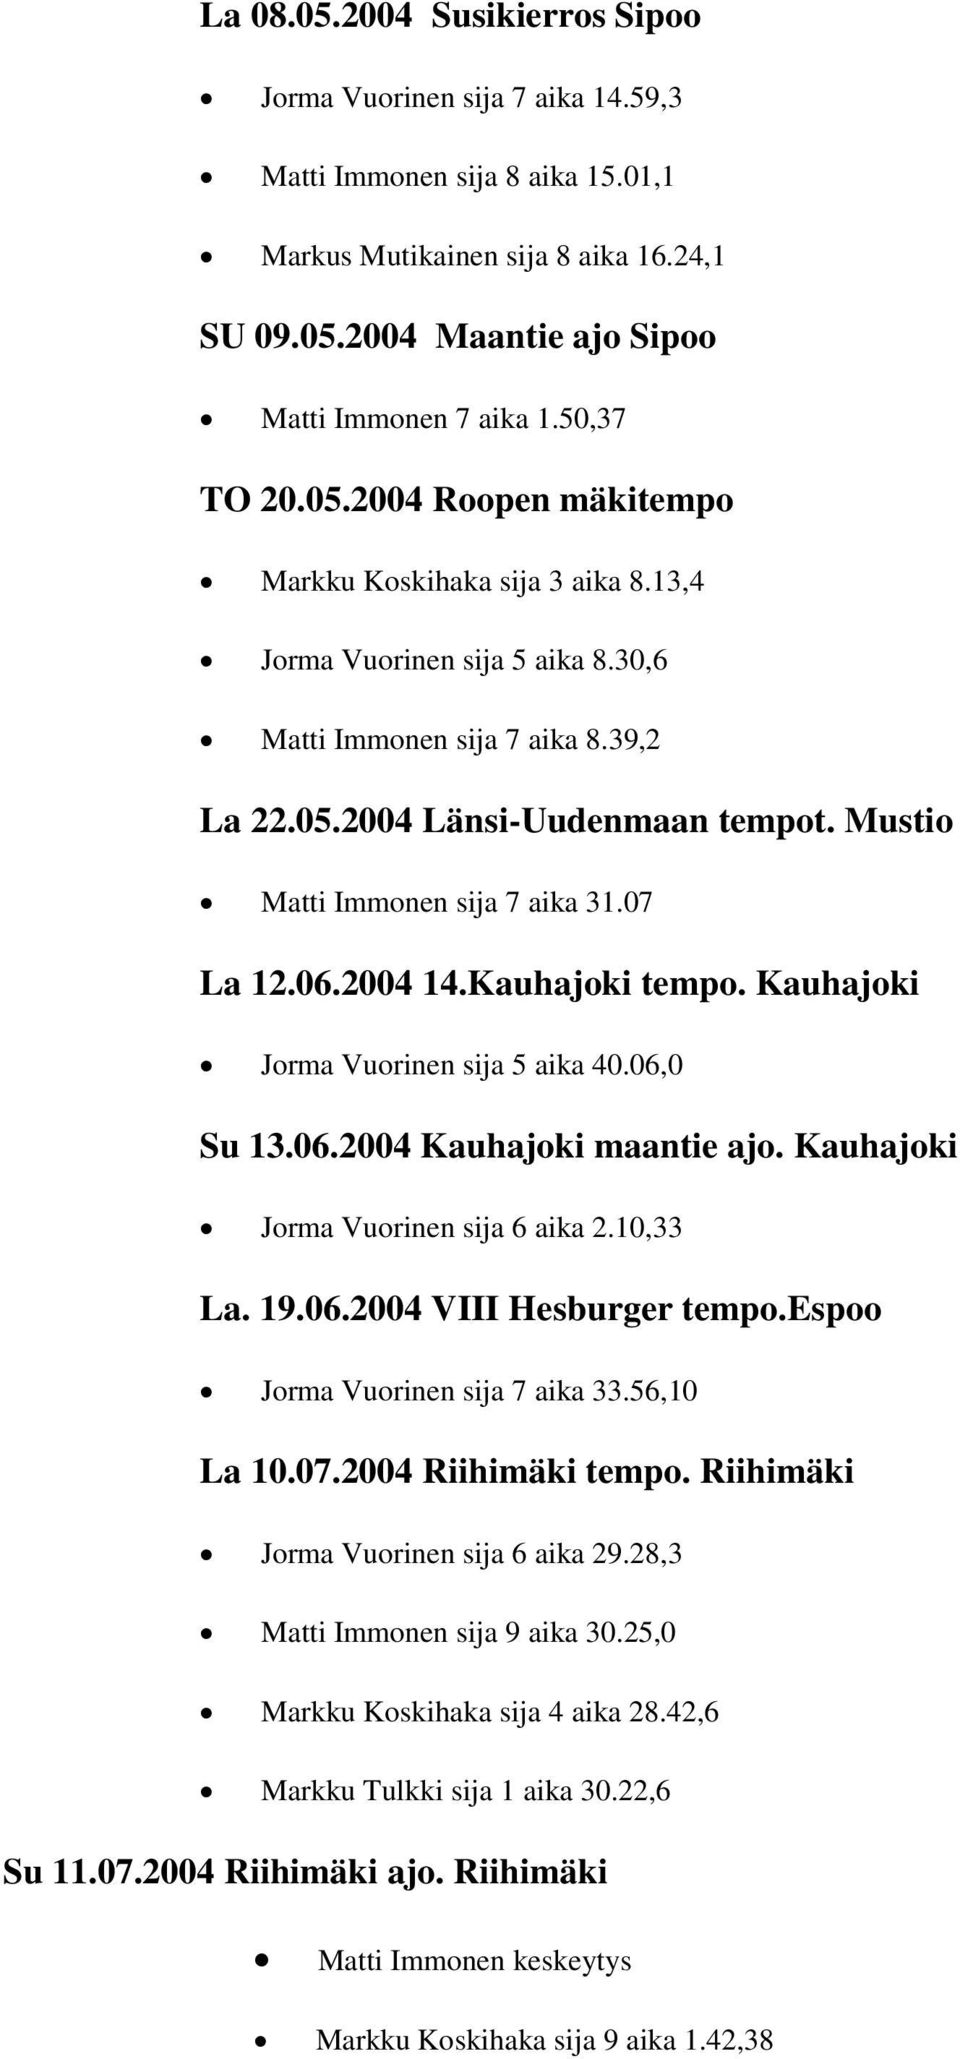 Mustio Matti Immonen sija 7 aika 31.07 La 12.06.2004 14.Kauhajoki tempo. Kauhajoki Jorma Vuorinen sija 5 aika 40.06,0 Su 13.06.2004 Kauhajoki maantie ajo. Kauhajoki Jorma Vuorinen sija 6 aika 2.